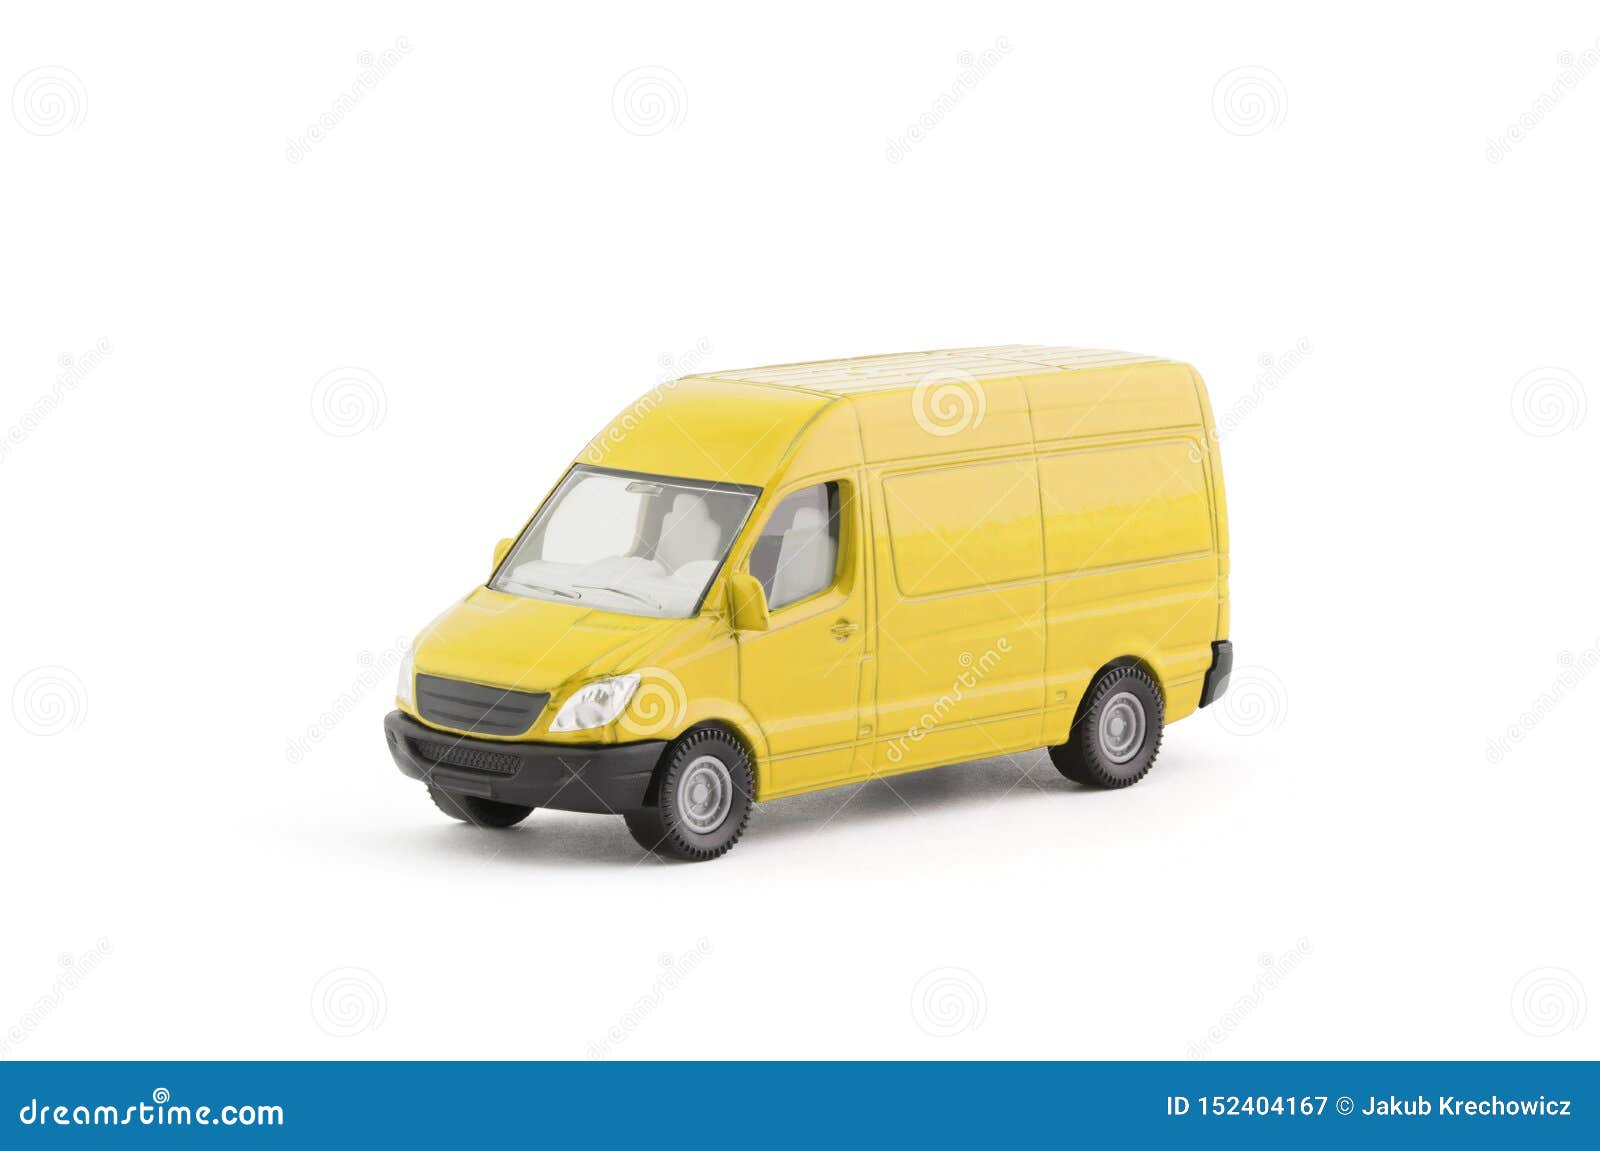 small transport van